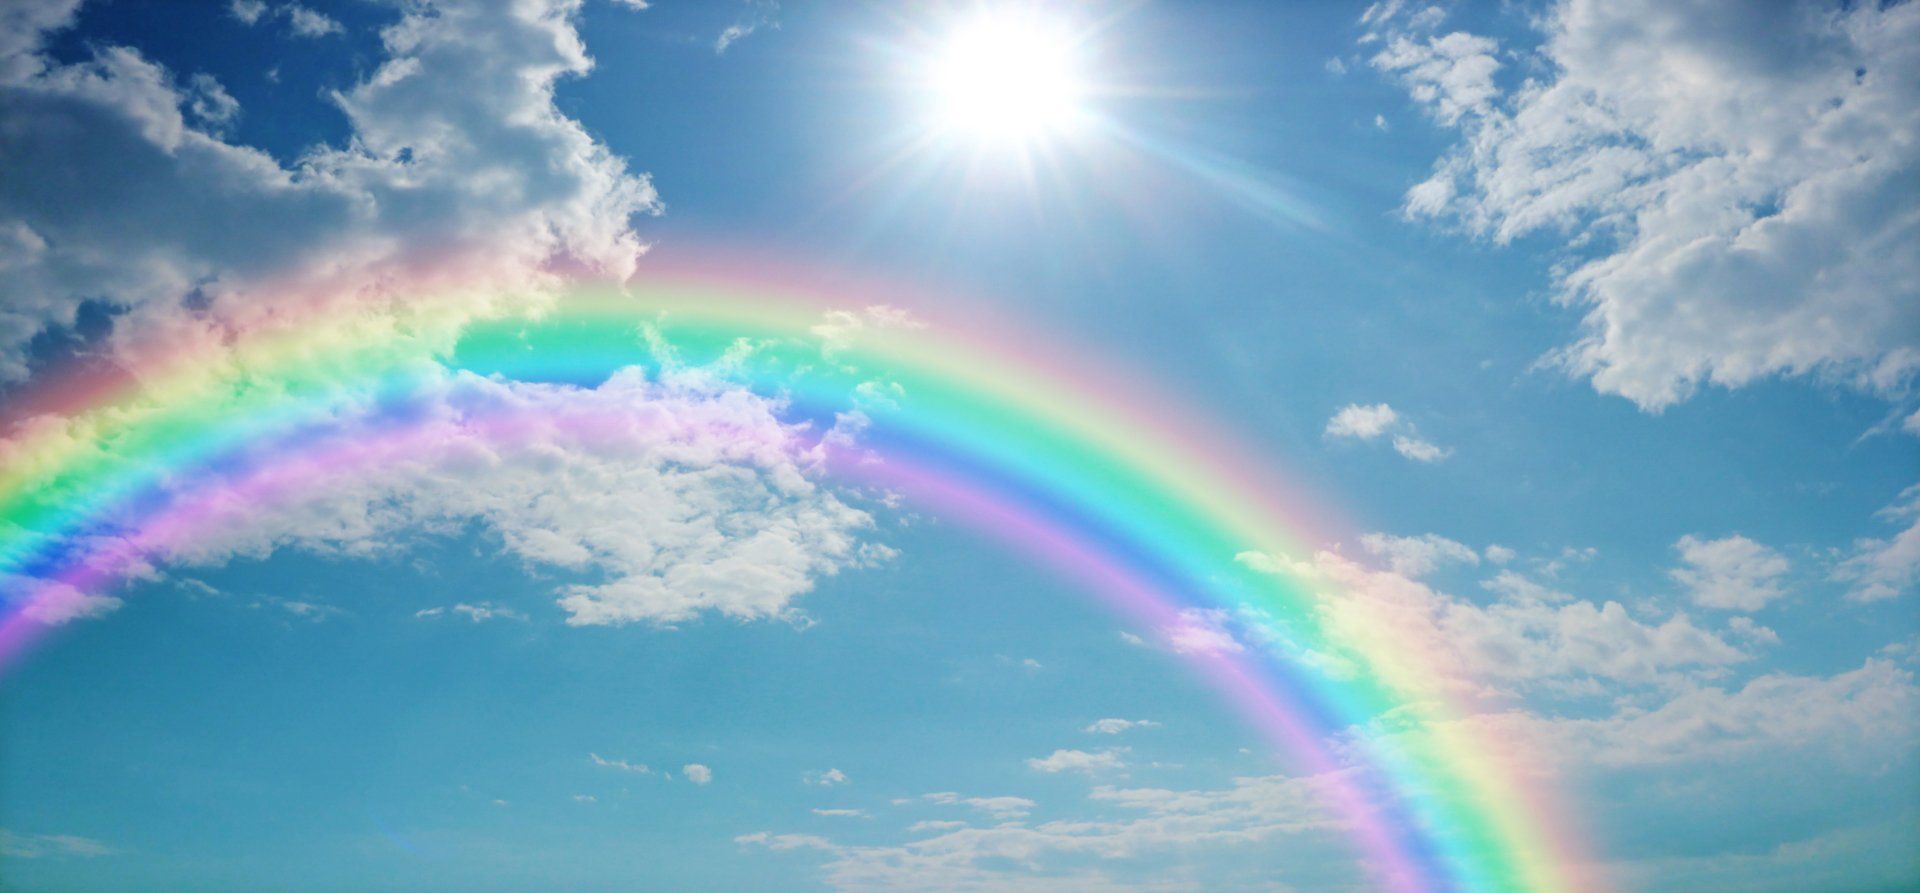 Rainbow across sunny sky